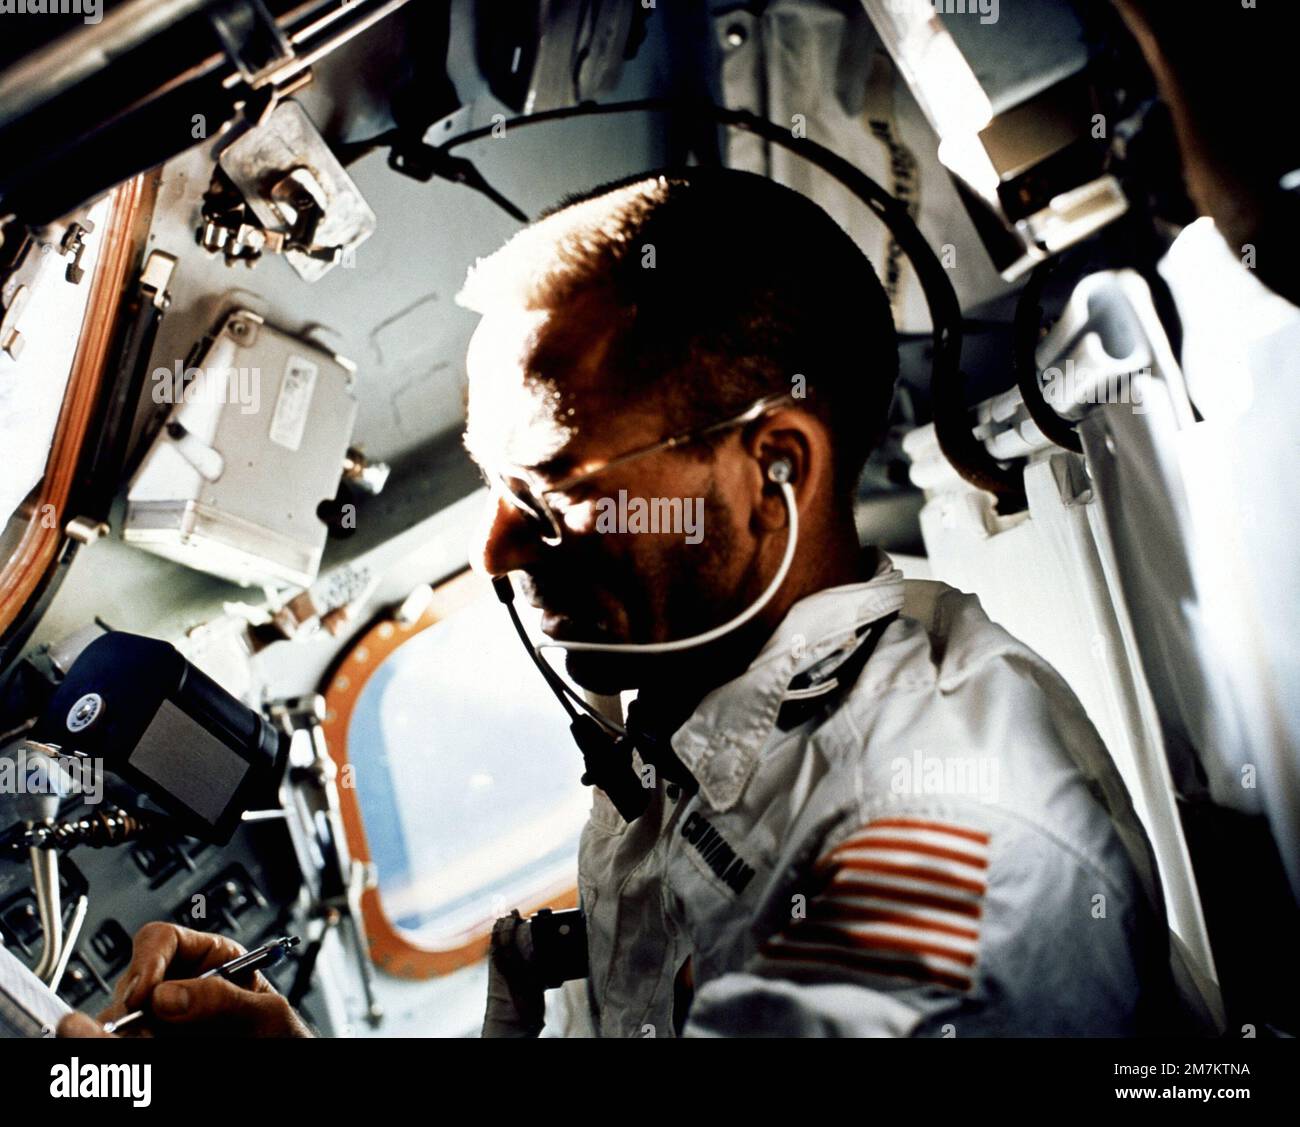 L'astronauta Walter Cunningham, pilota lunare dell'Apollo 7, scrive con una penna spaziale mentre esegue le attività di volo il nono giorno della missione Apollo 7. Una rivista di film Hasselbald da 70 mm galleggia appena sopra la mano destra di Cunningham nell'ambiente a gravità zero della navicella spaziale. Paese: Sconosciuto Foto Stock